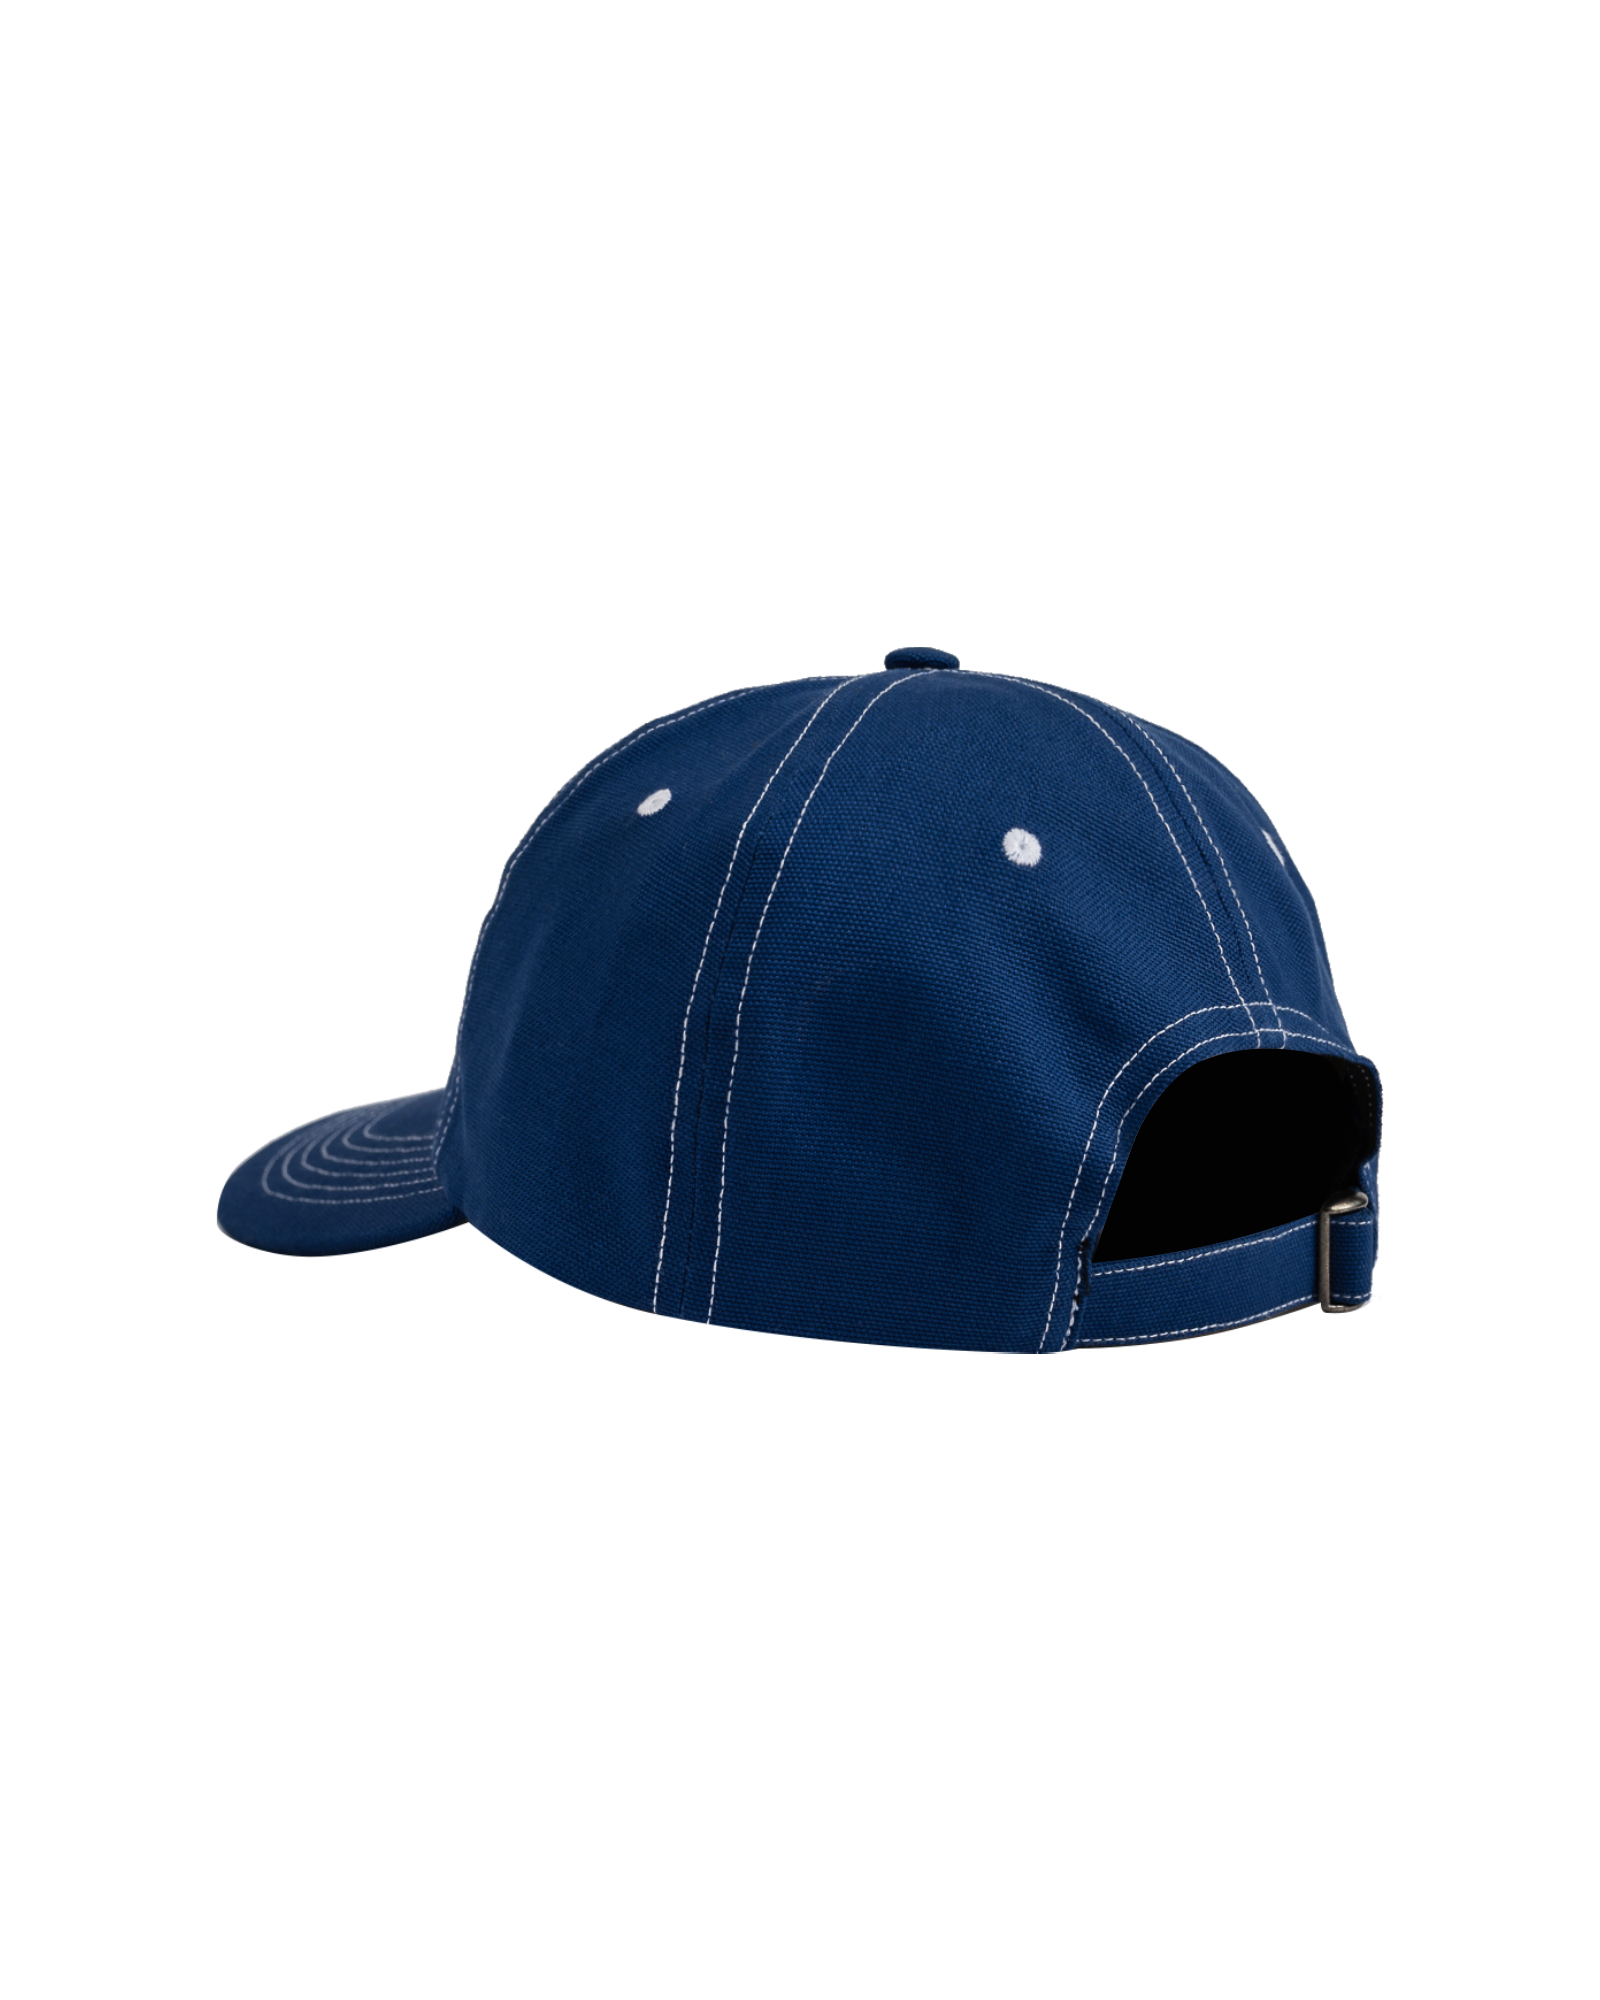 Dancer - Hat - OG Logo - Dad Cap - Blue